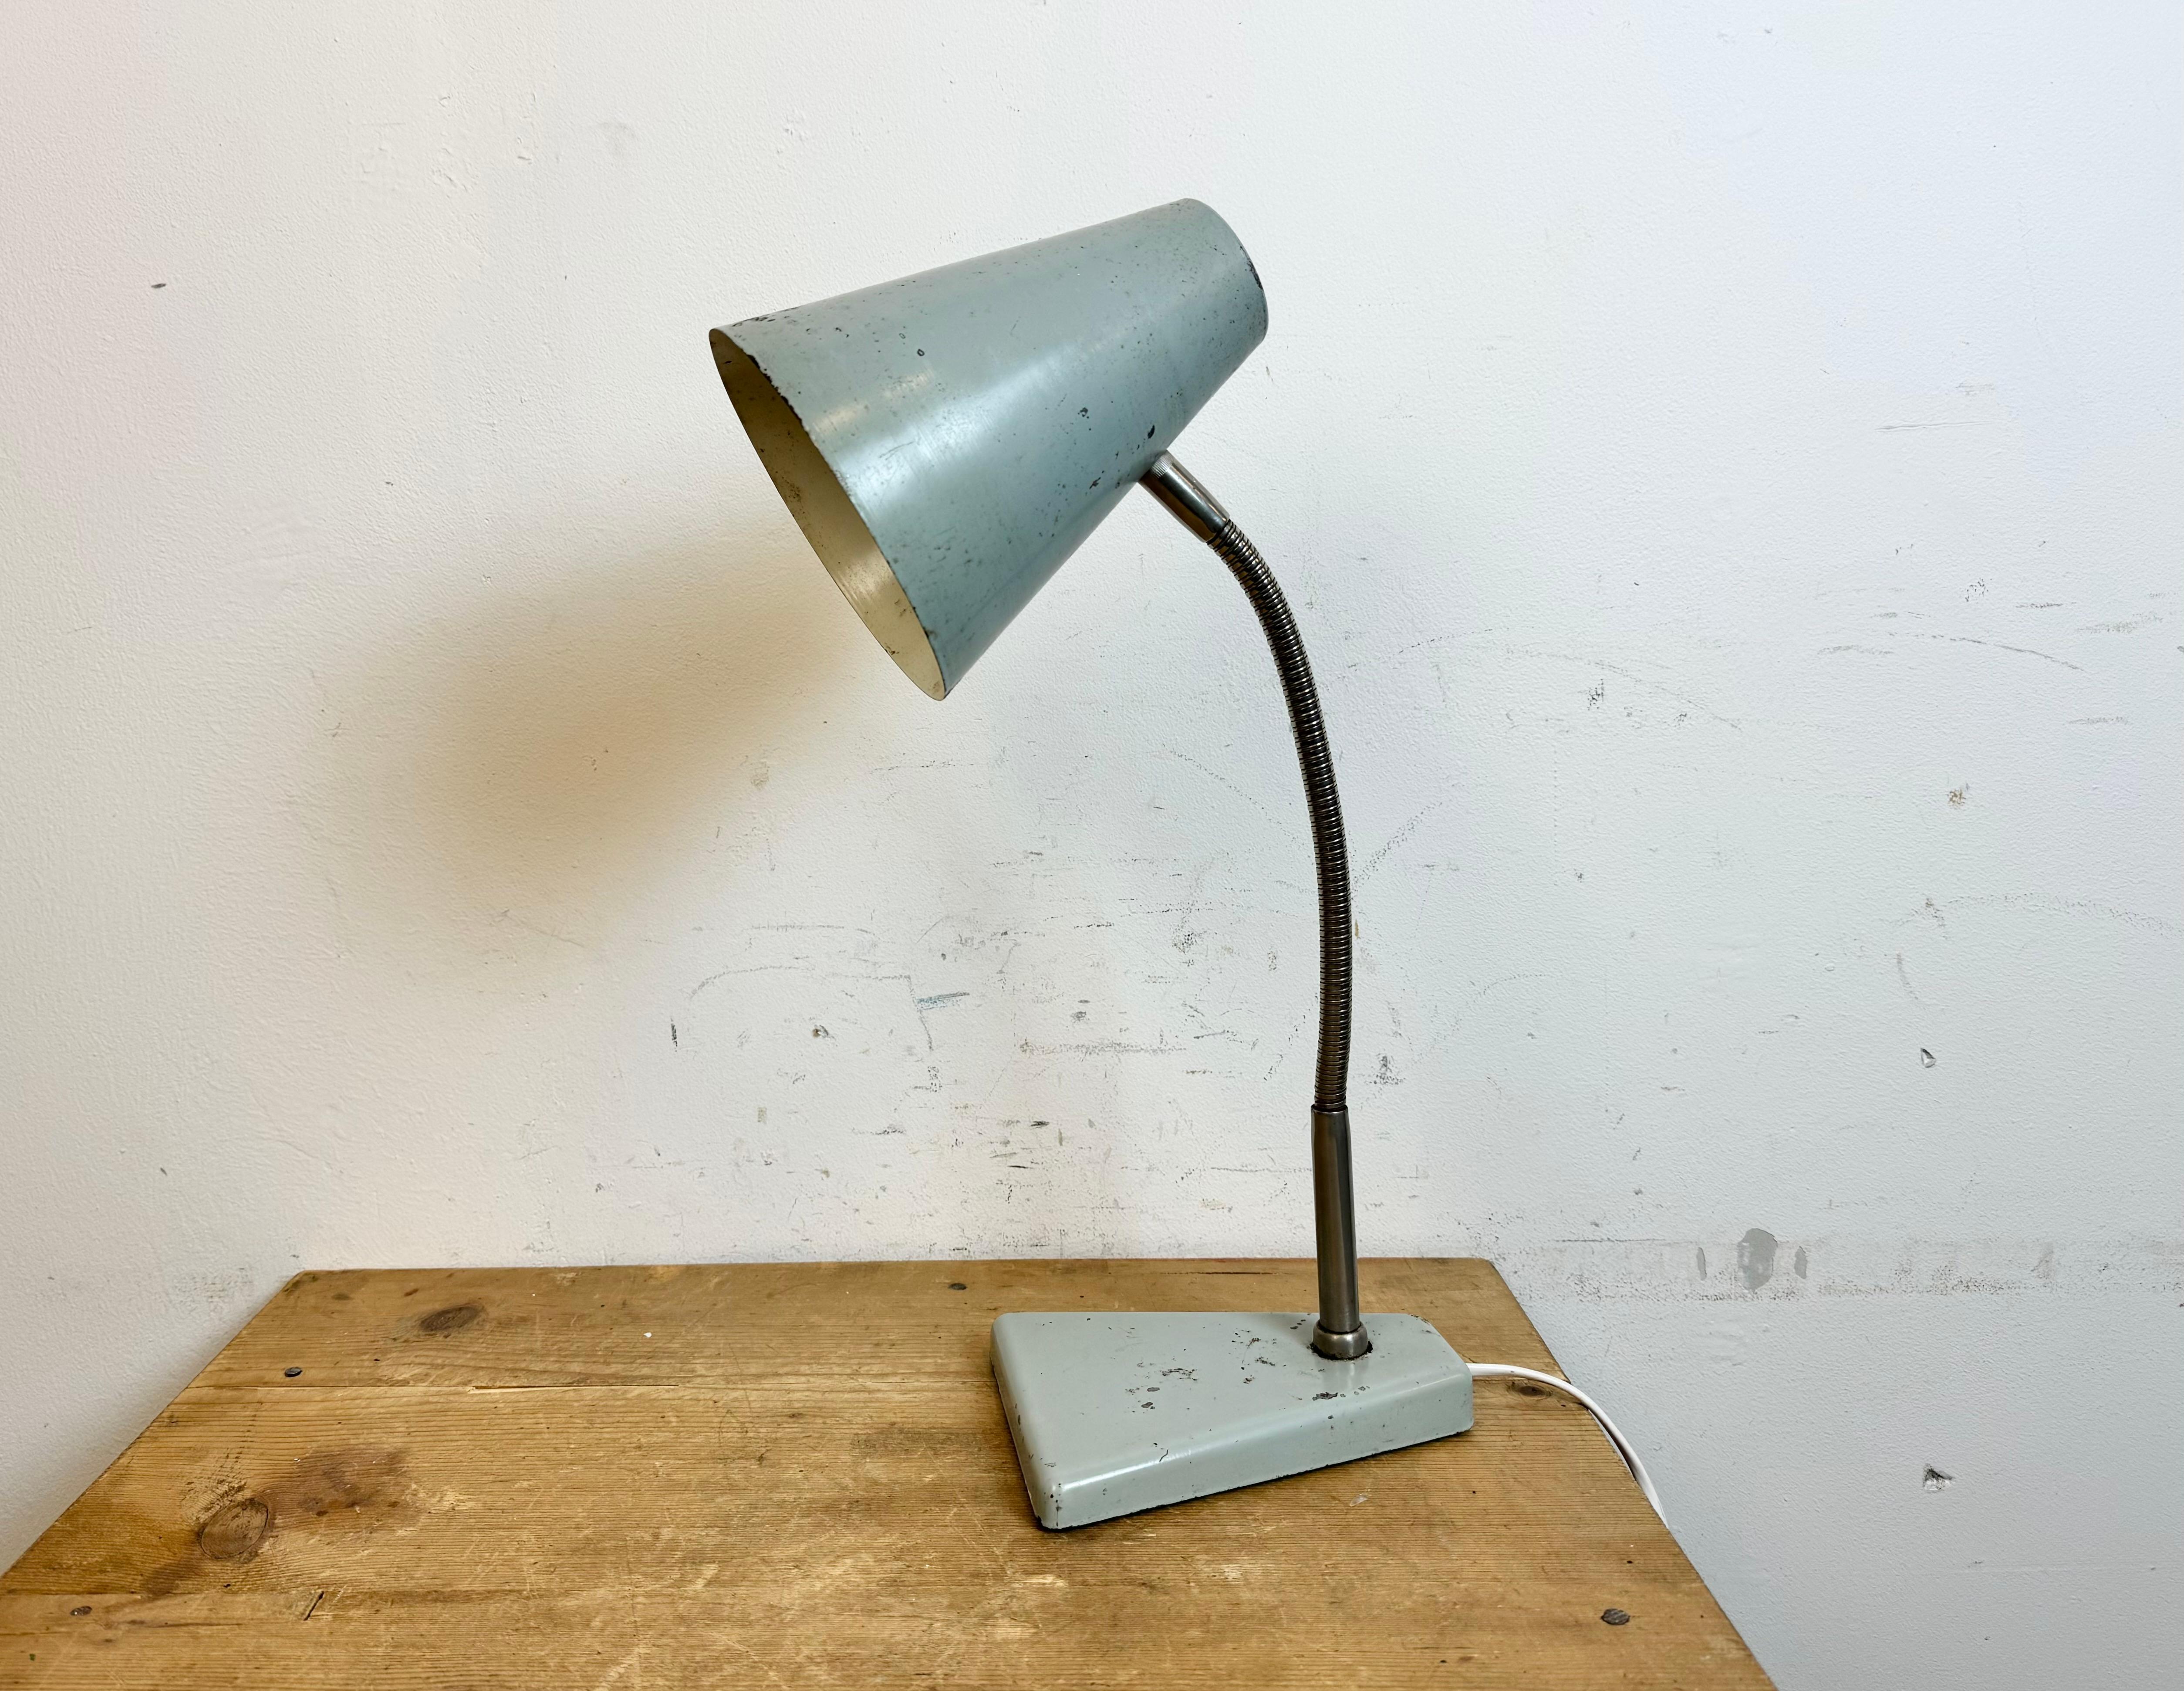 Industrielle Werkstatt-Tischlampe von Zaos in Polen aus den 1960er Jahren mit grauem Metallsockel und -schirm und einem  verchromter Schwanenhals. Die Originalfassung erfordert E27/E26-Glühbirnen.
Der Durchmesser des Schirms beträgt 15 cm. Das